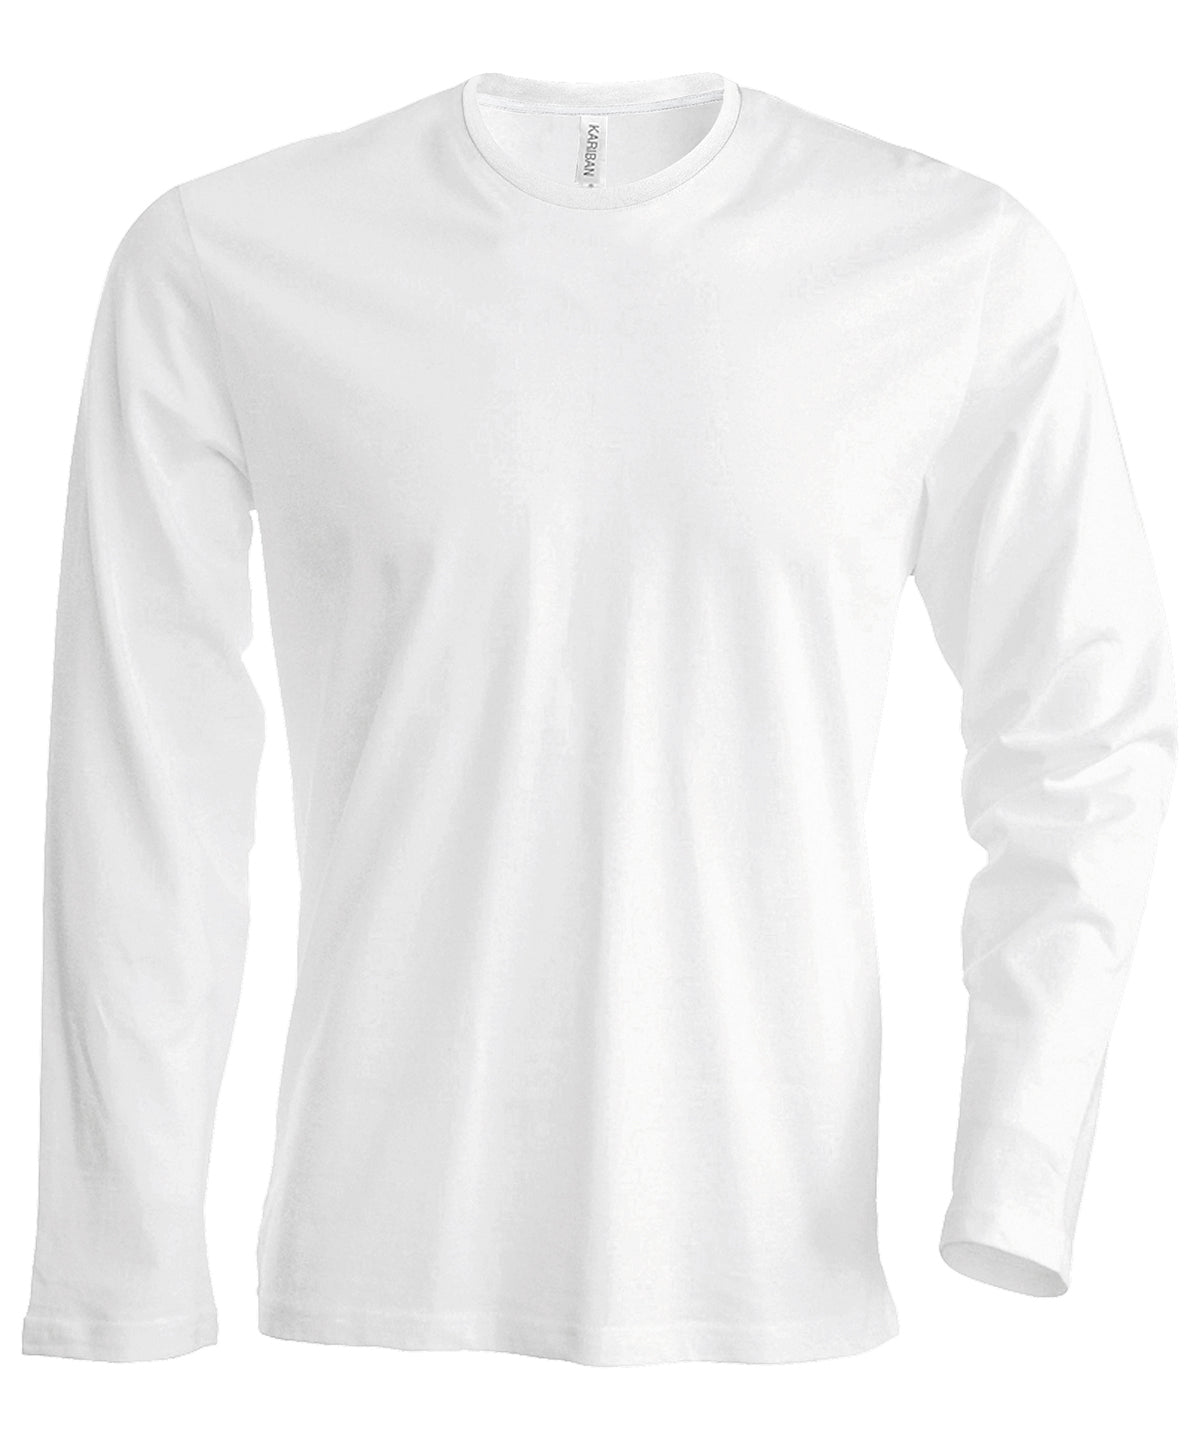 Stuttermabolir - Men's Long-sleeved Crew Neck T-shirt